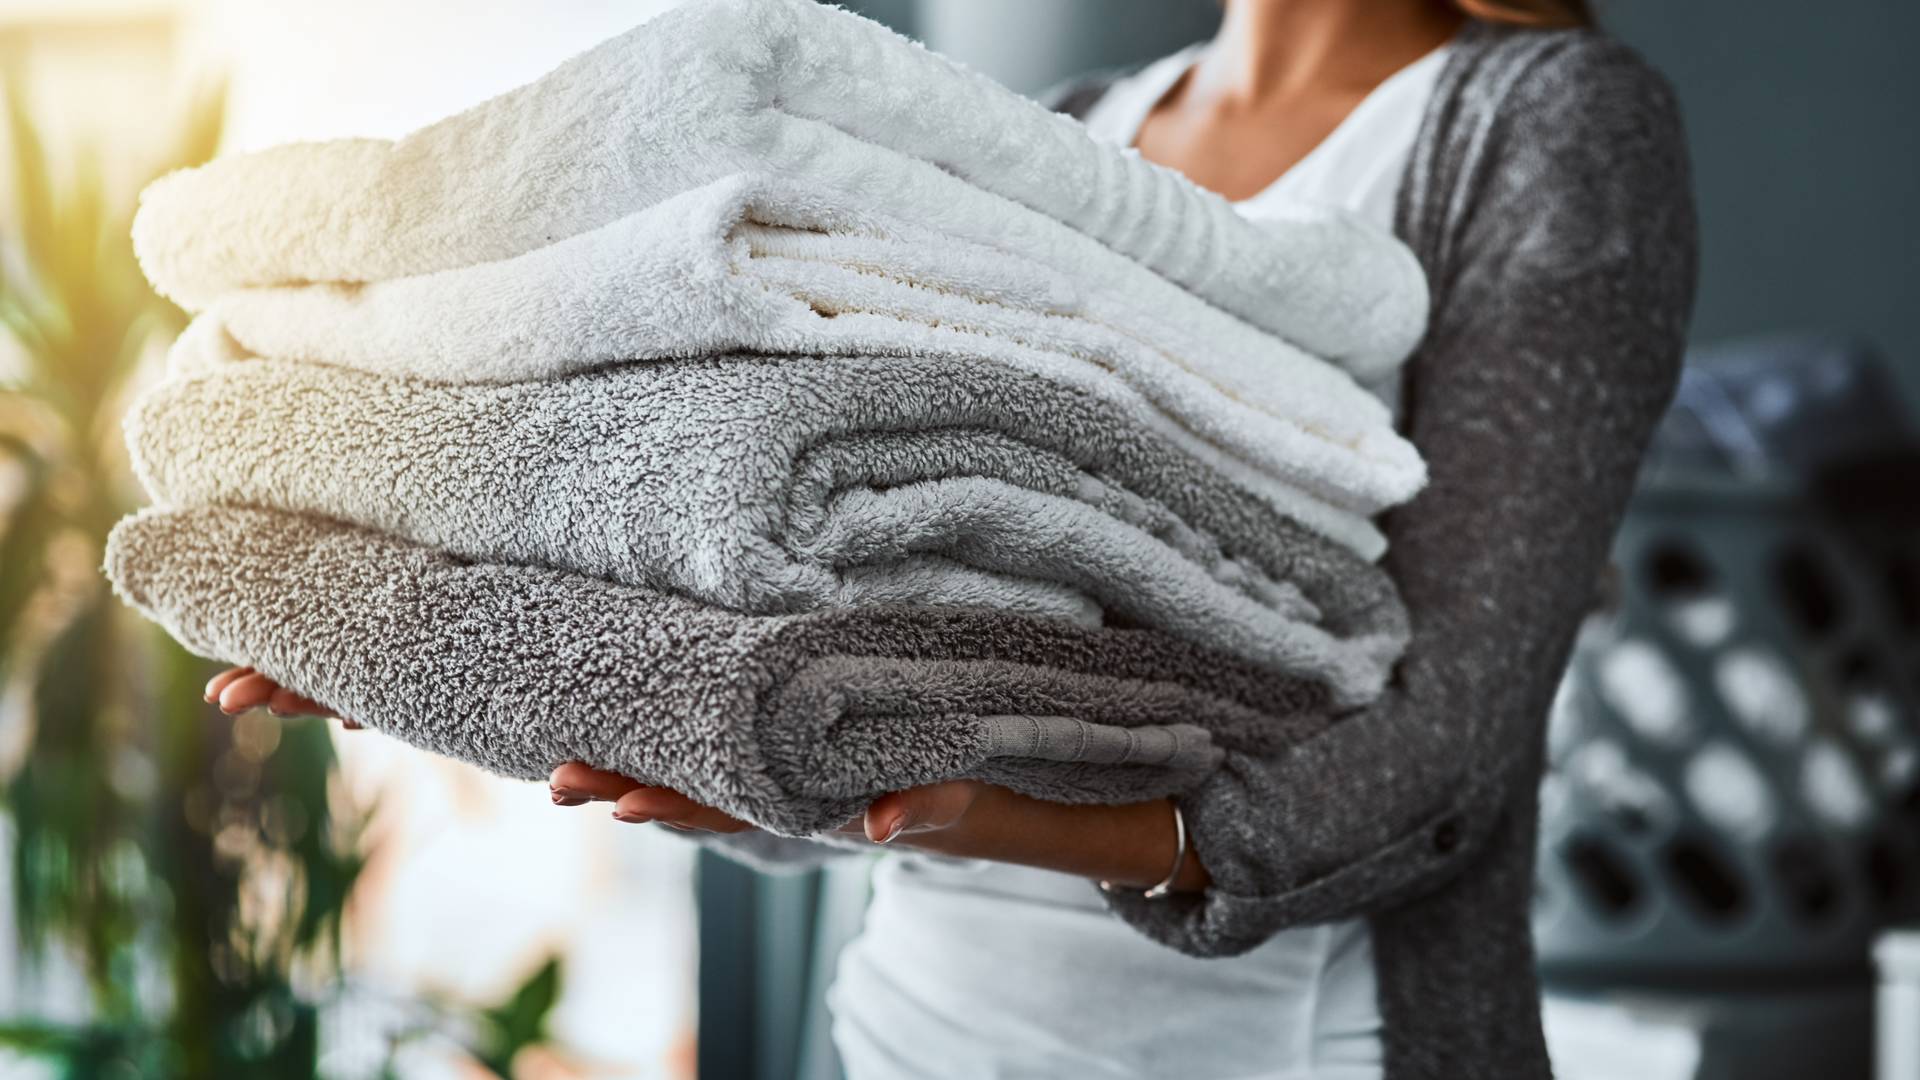 Suszy, odświeża i dezynfekuje ubrania — szafa parowa zastąpi wizyty w pralni